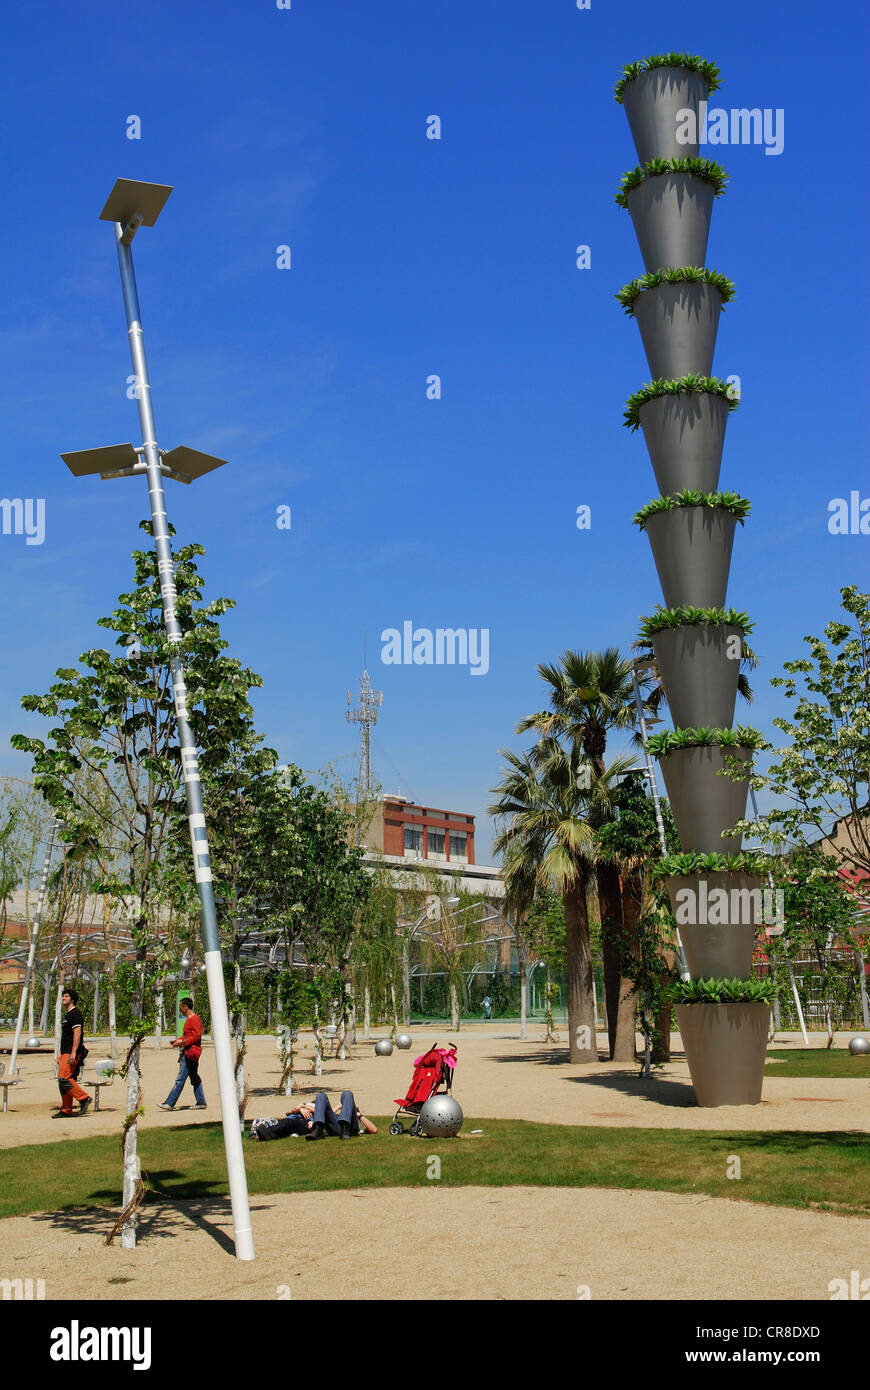 España, Cataluña, Barcelona, el Parque Central de Poblenou por el arquitecto Jean Nouvel, Avinguda Diagonal en el ángulo con Foto de stock